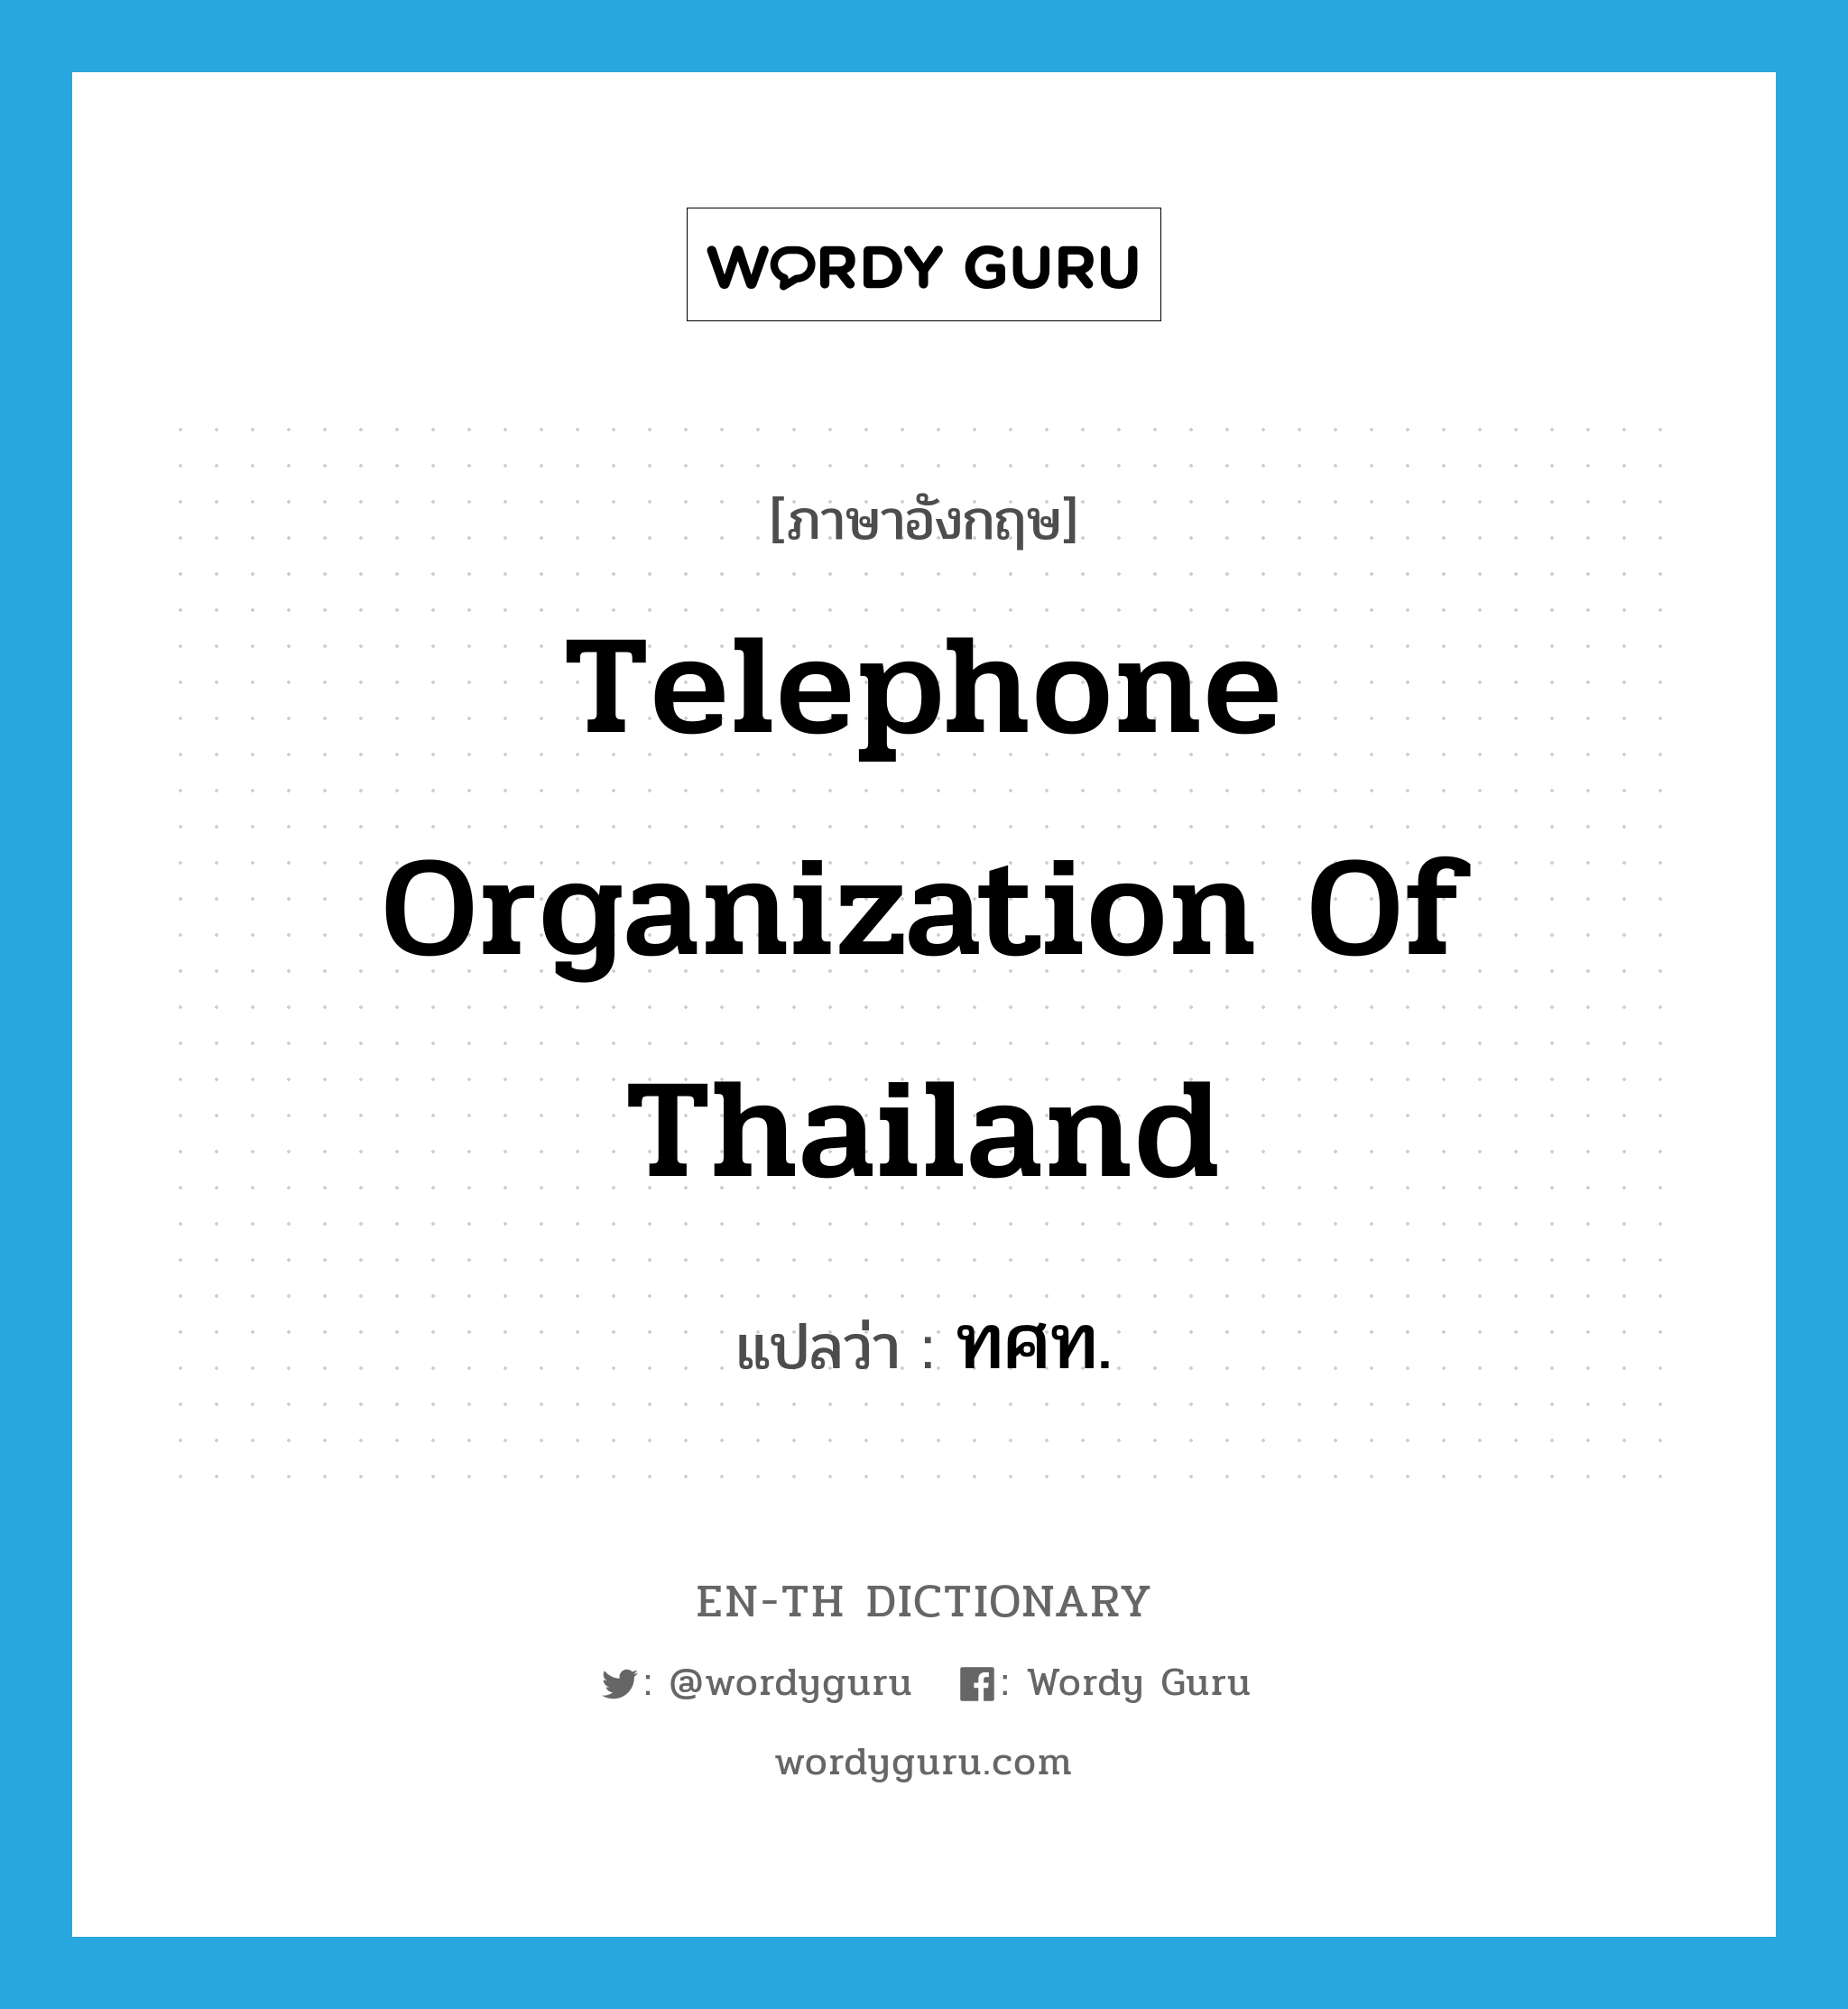 ทศท. ภาษาอังกฤษ?, คำศัพท์ภาษาอังกฤษ ทศท. แปลว่า Telephone Organization of Thailand ประเภท N หมวด N